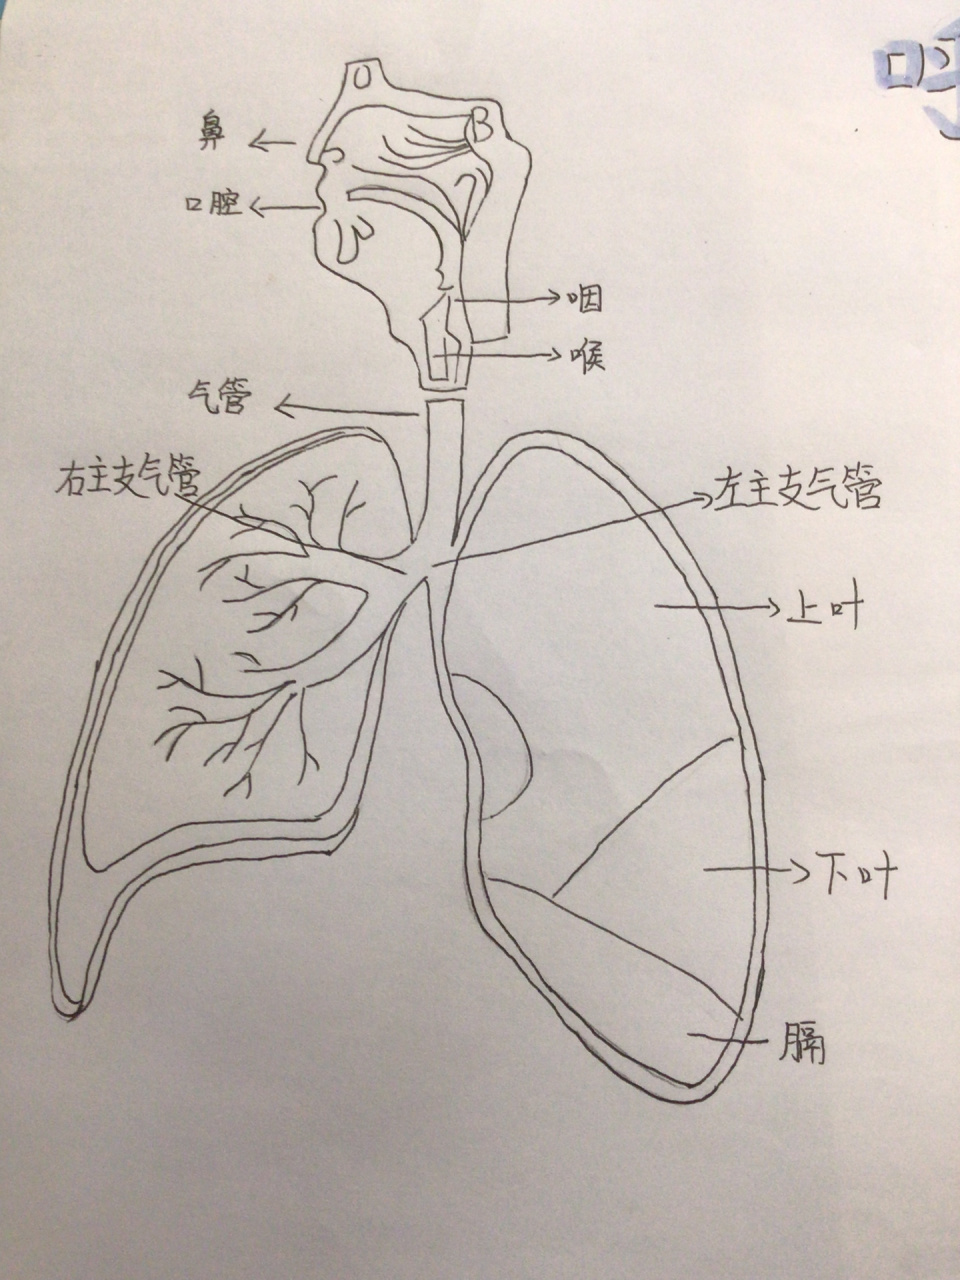 呼吸系统结构手抄报图片